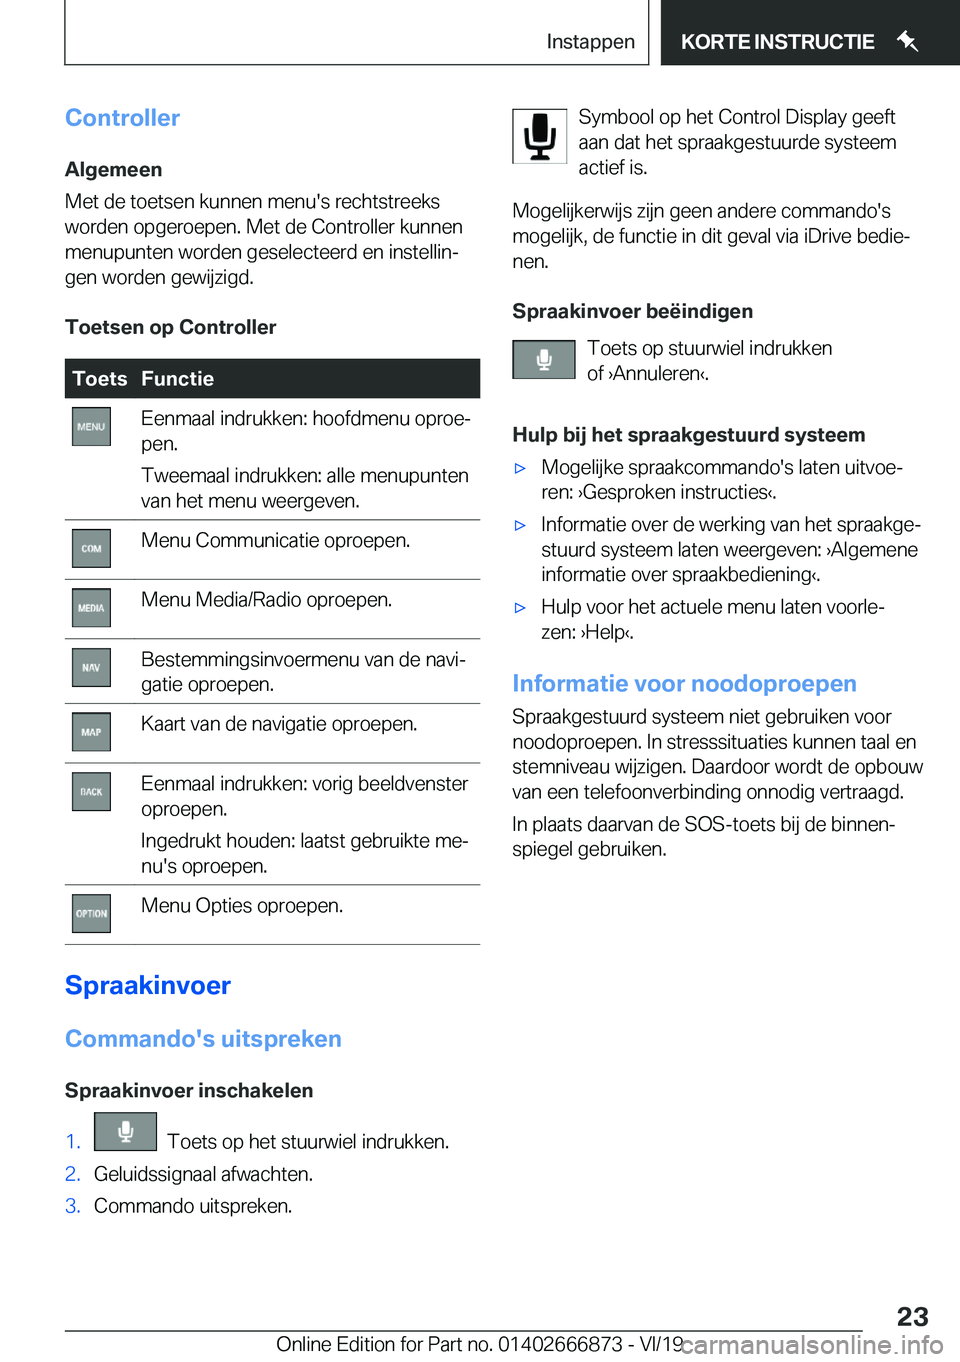 BMW X4 M 2020  Instructieboekjes (in Dutch) �C�o�n�t�r�o�l�l�e�r�A�l�g�e�m�e�e�n
�M�e�t��d�e��t�o�e�t�s�e�n��k�u�n�n�e�n��m�e�n�u�'�s��r�e�c�h�t�s�t�r�e�e�k�s
�w�o�r�d�e�n��o�p�g�e�r�o�e�p�e�n�.��M�e�t��d�e��C�o�n�t�r�o�l�l�e�r��k